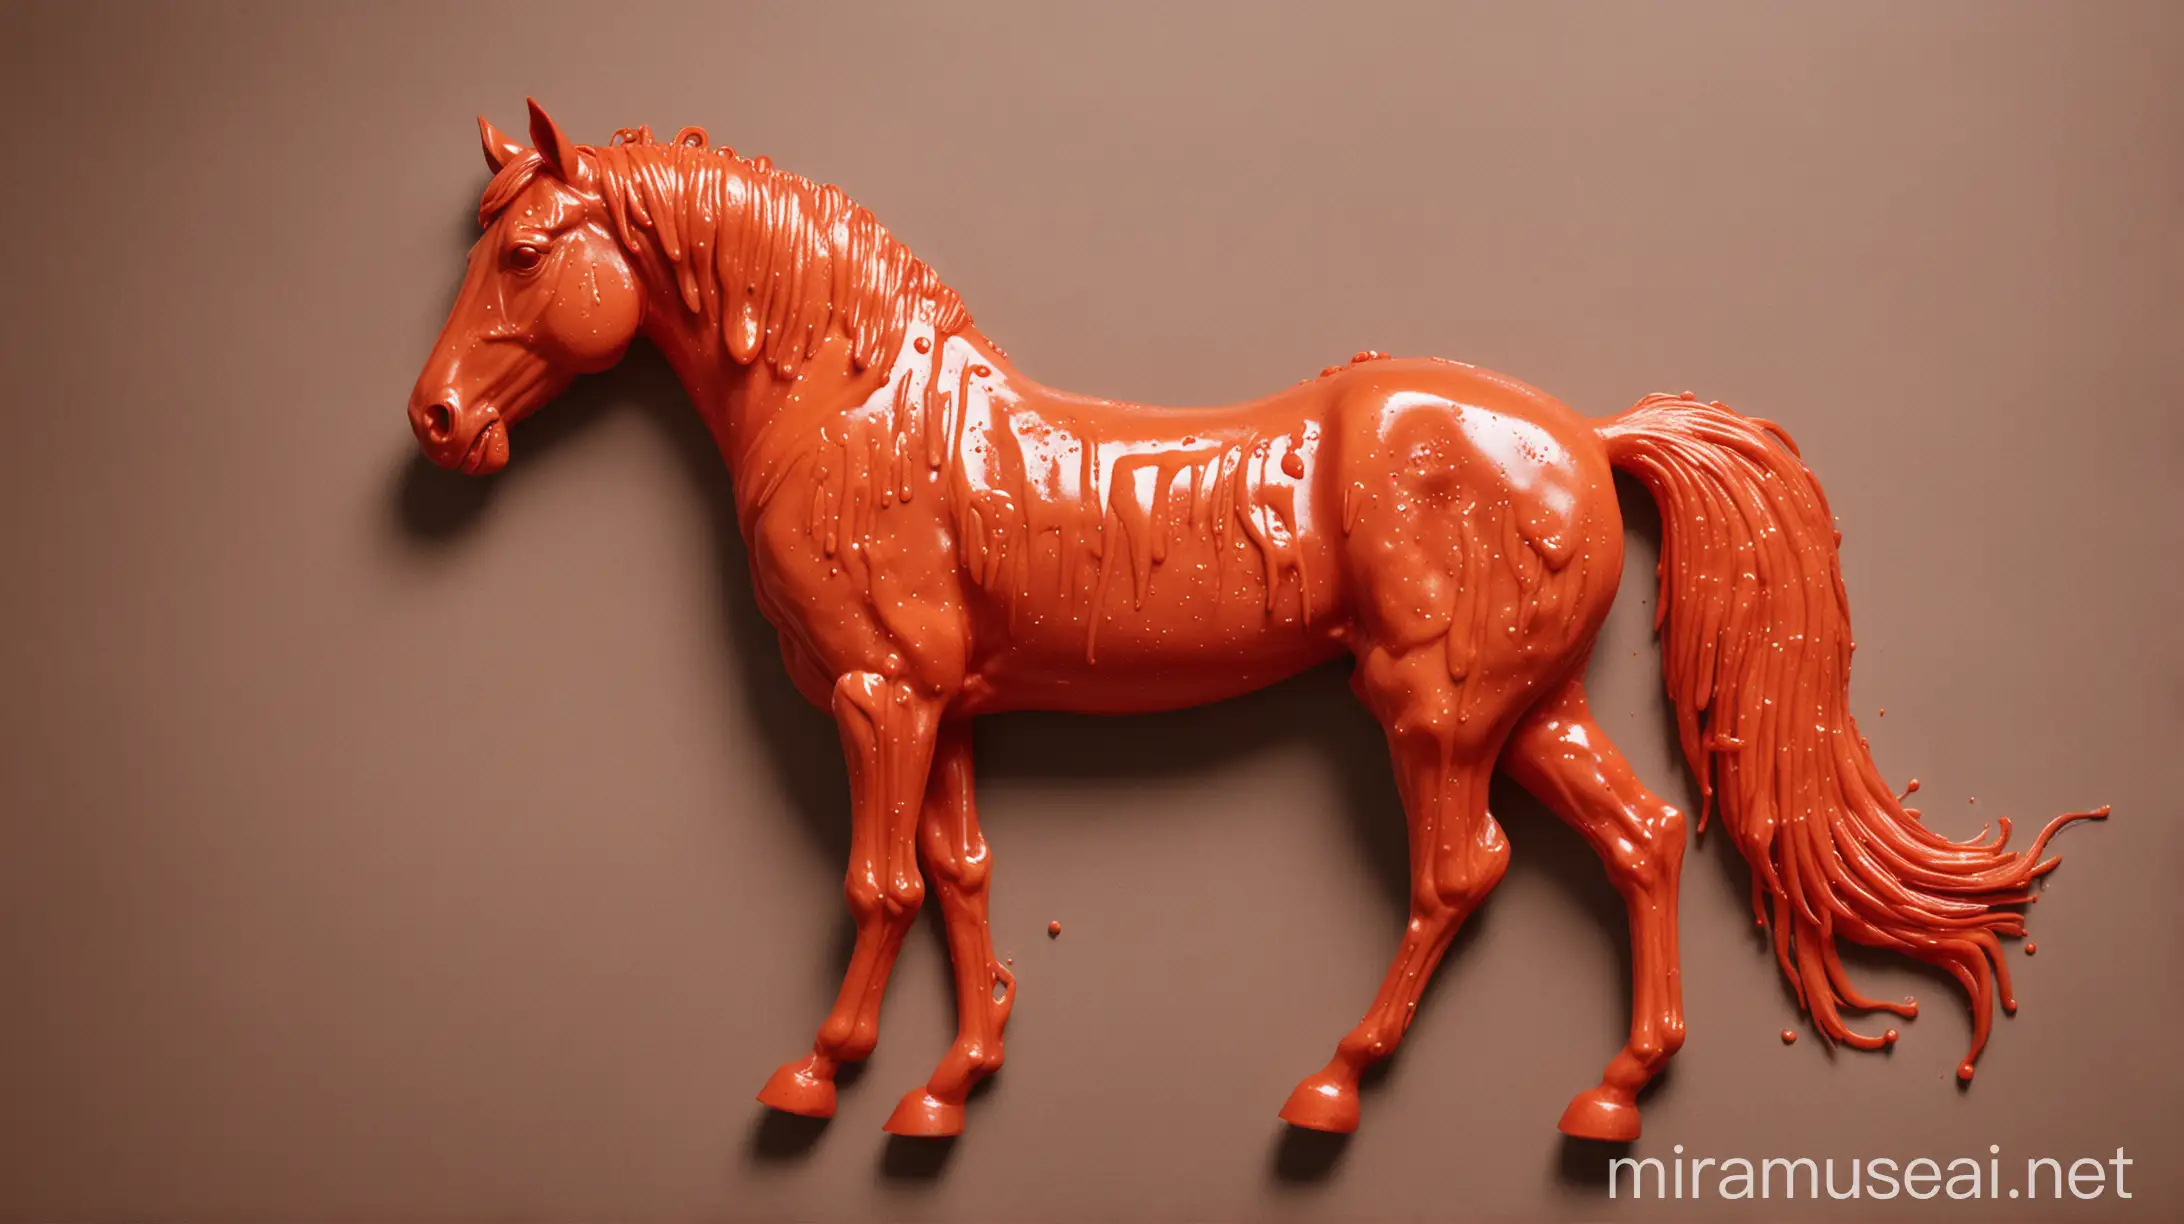 A horse made of ketchup
